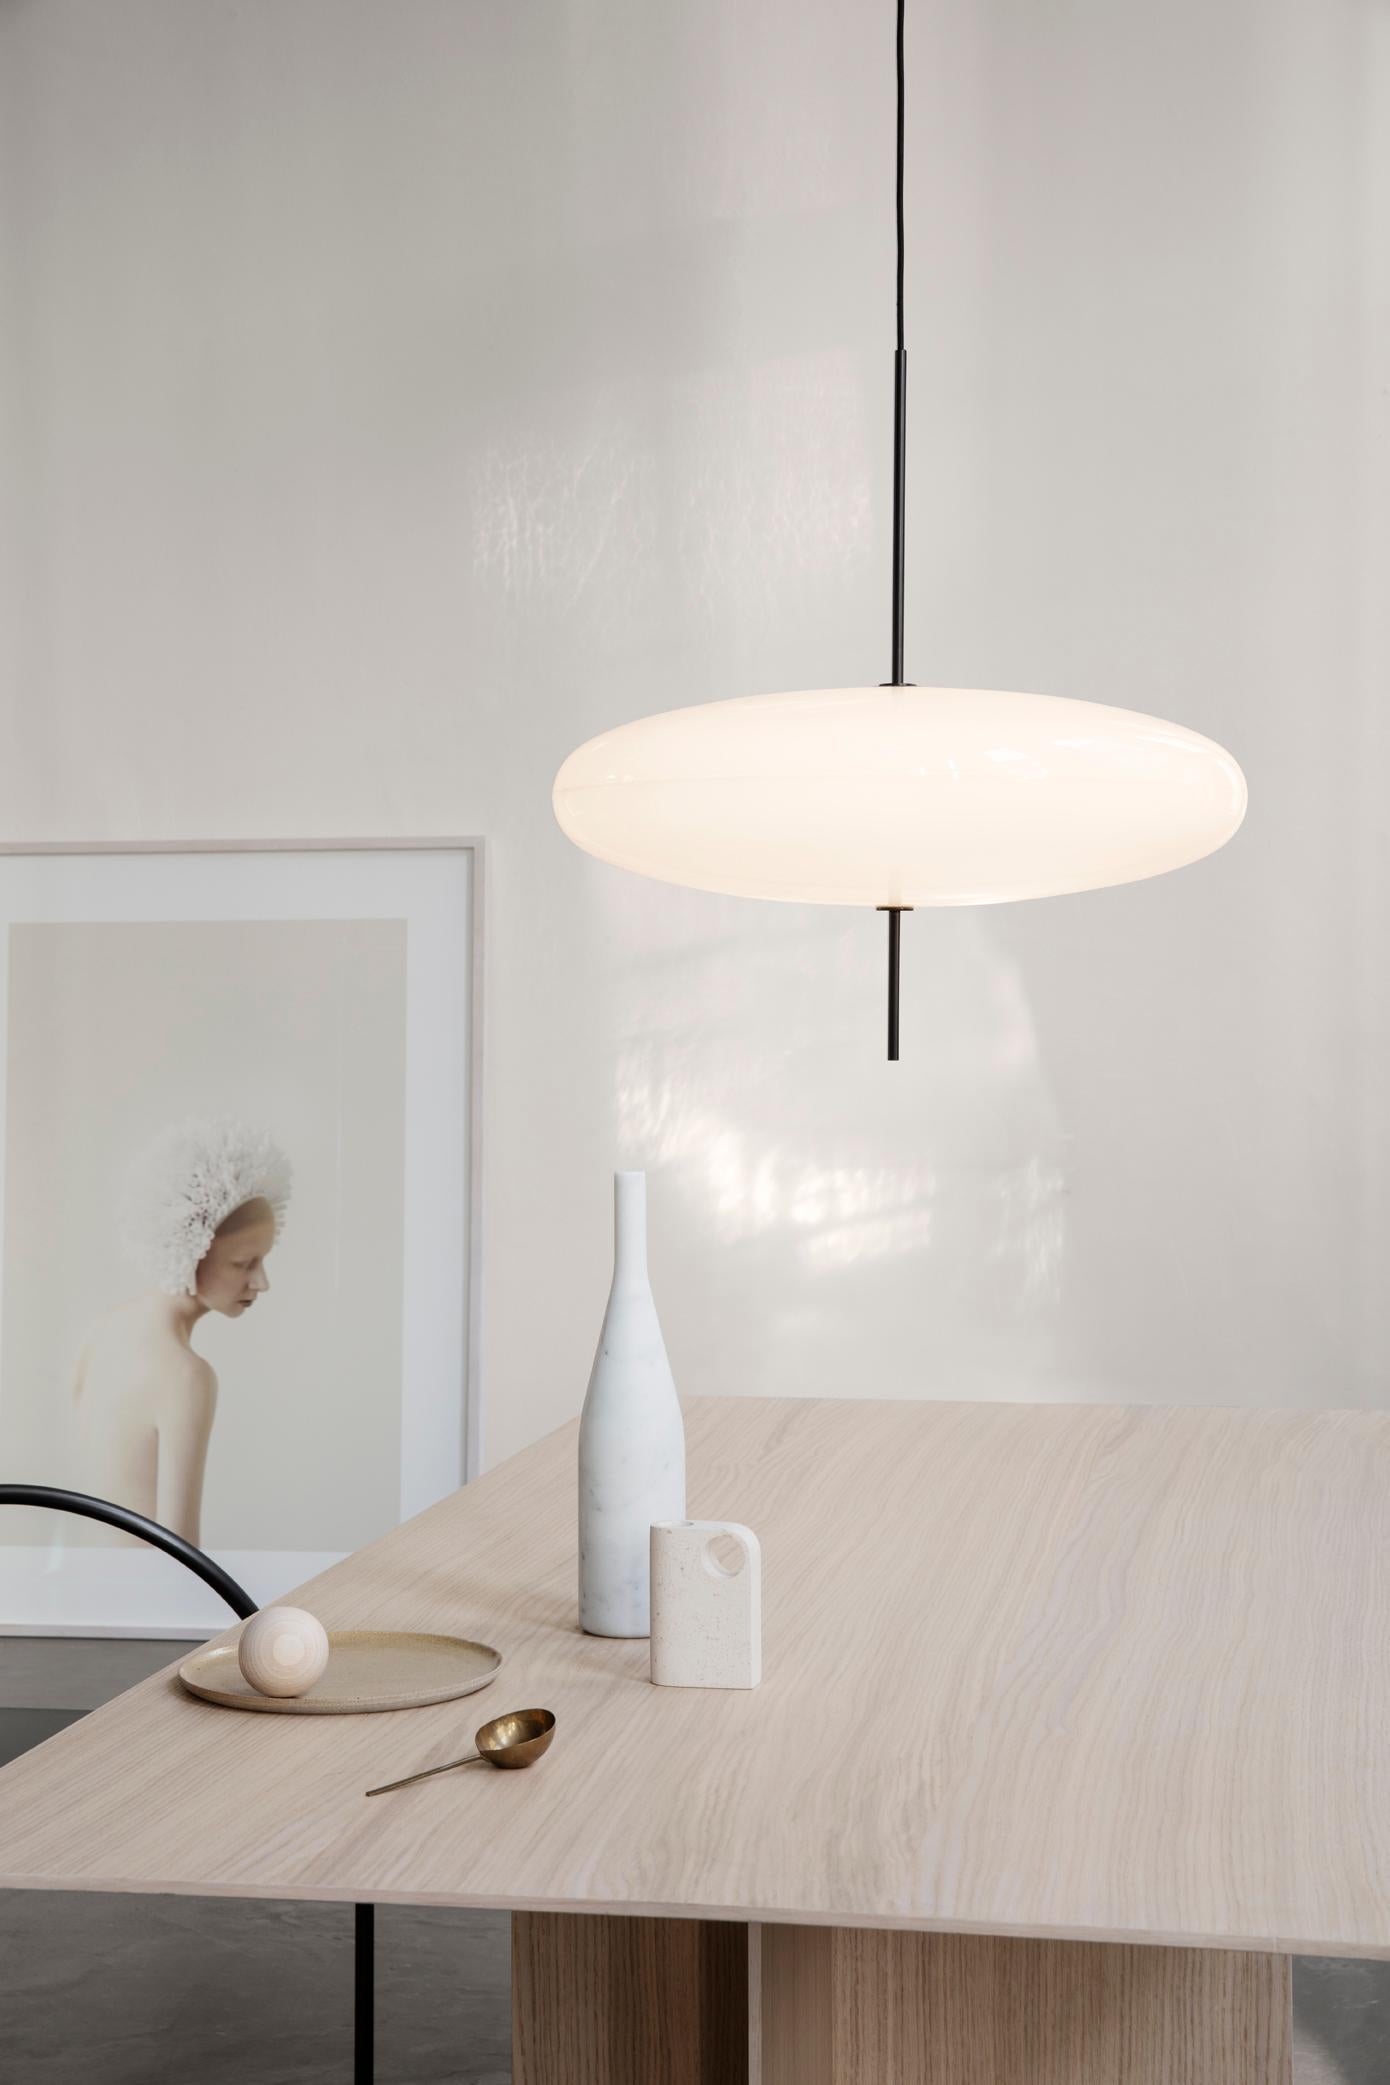 Gino Sarfatti Lamp Model 2065 White Diffuser, Black Hardware, for Astep For Sale 1